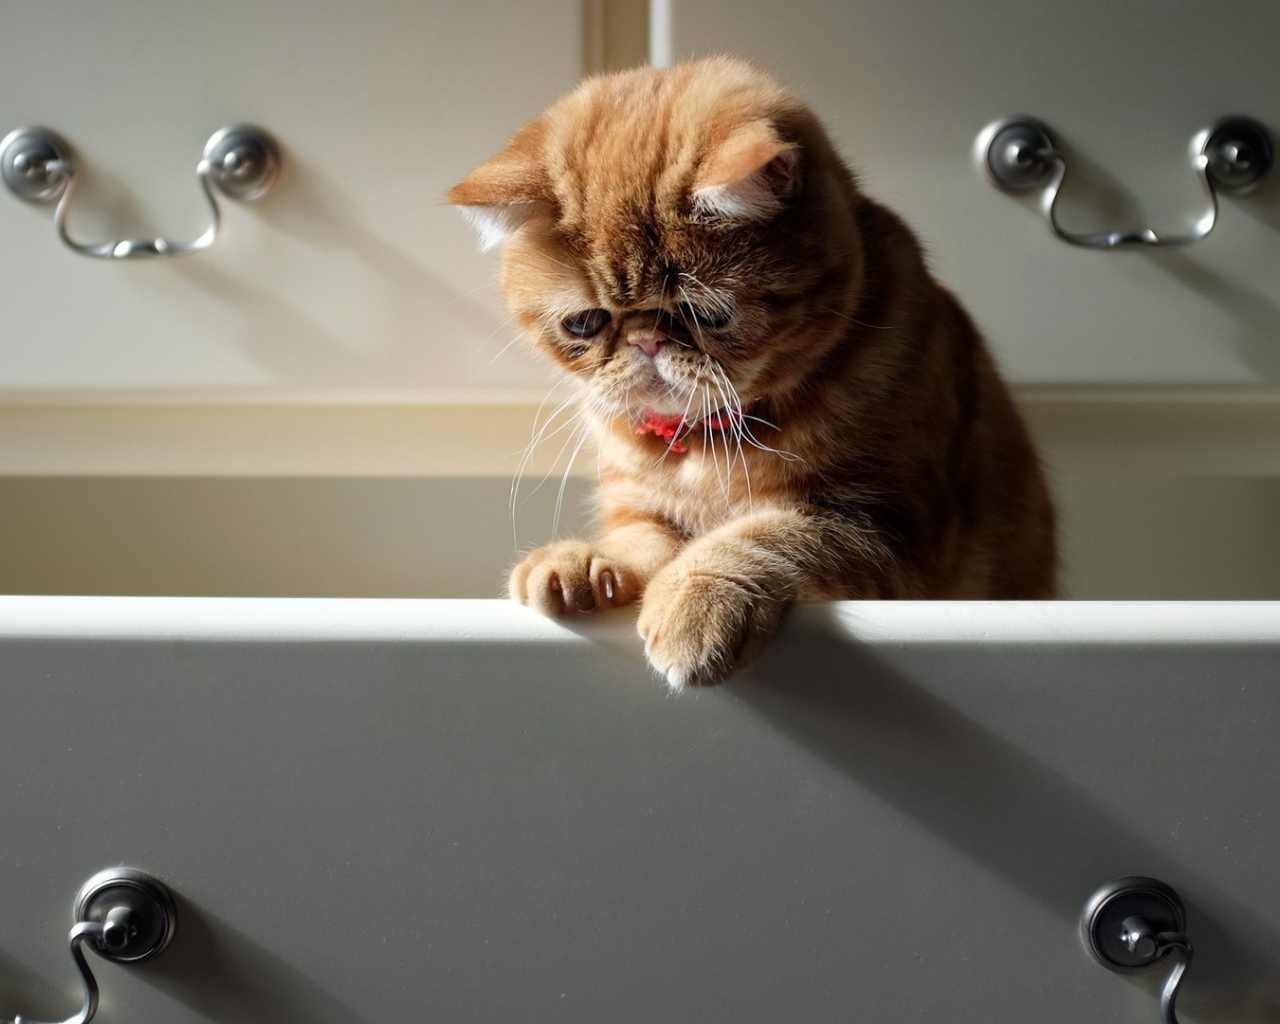 Cat in the Bureau drawer